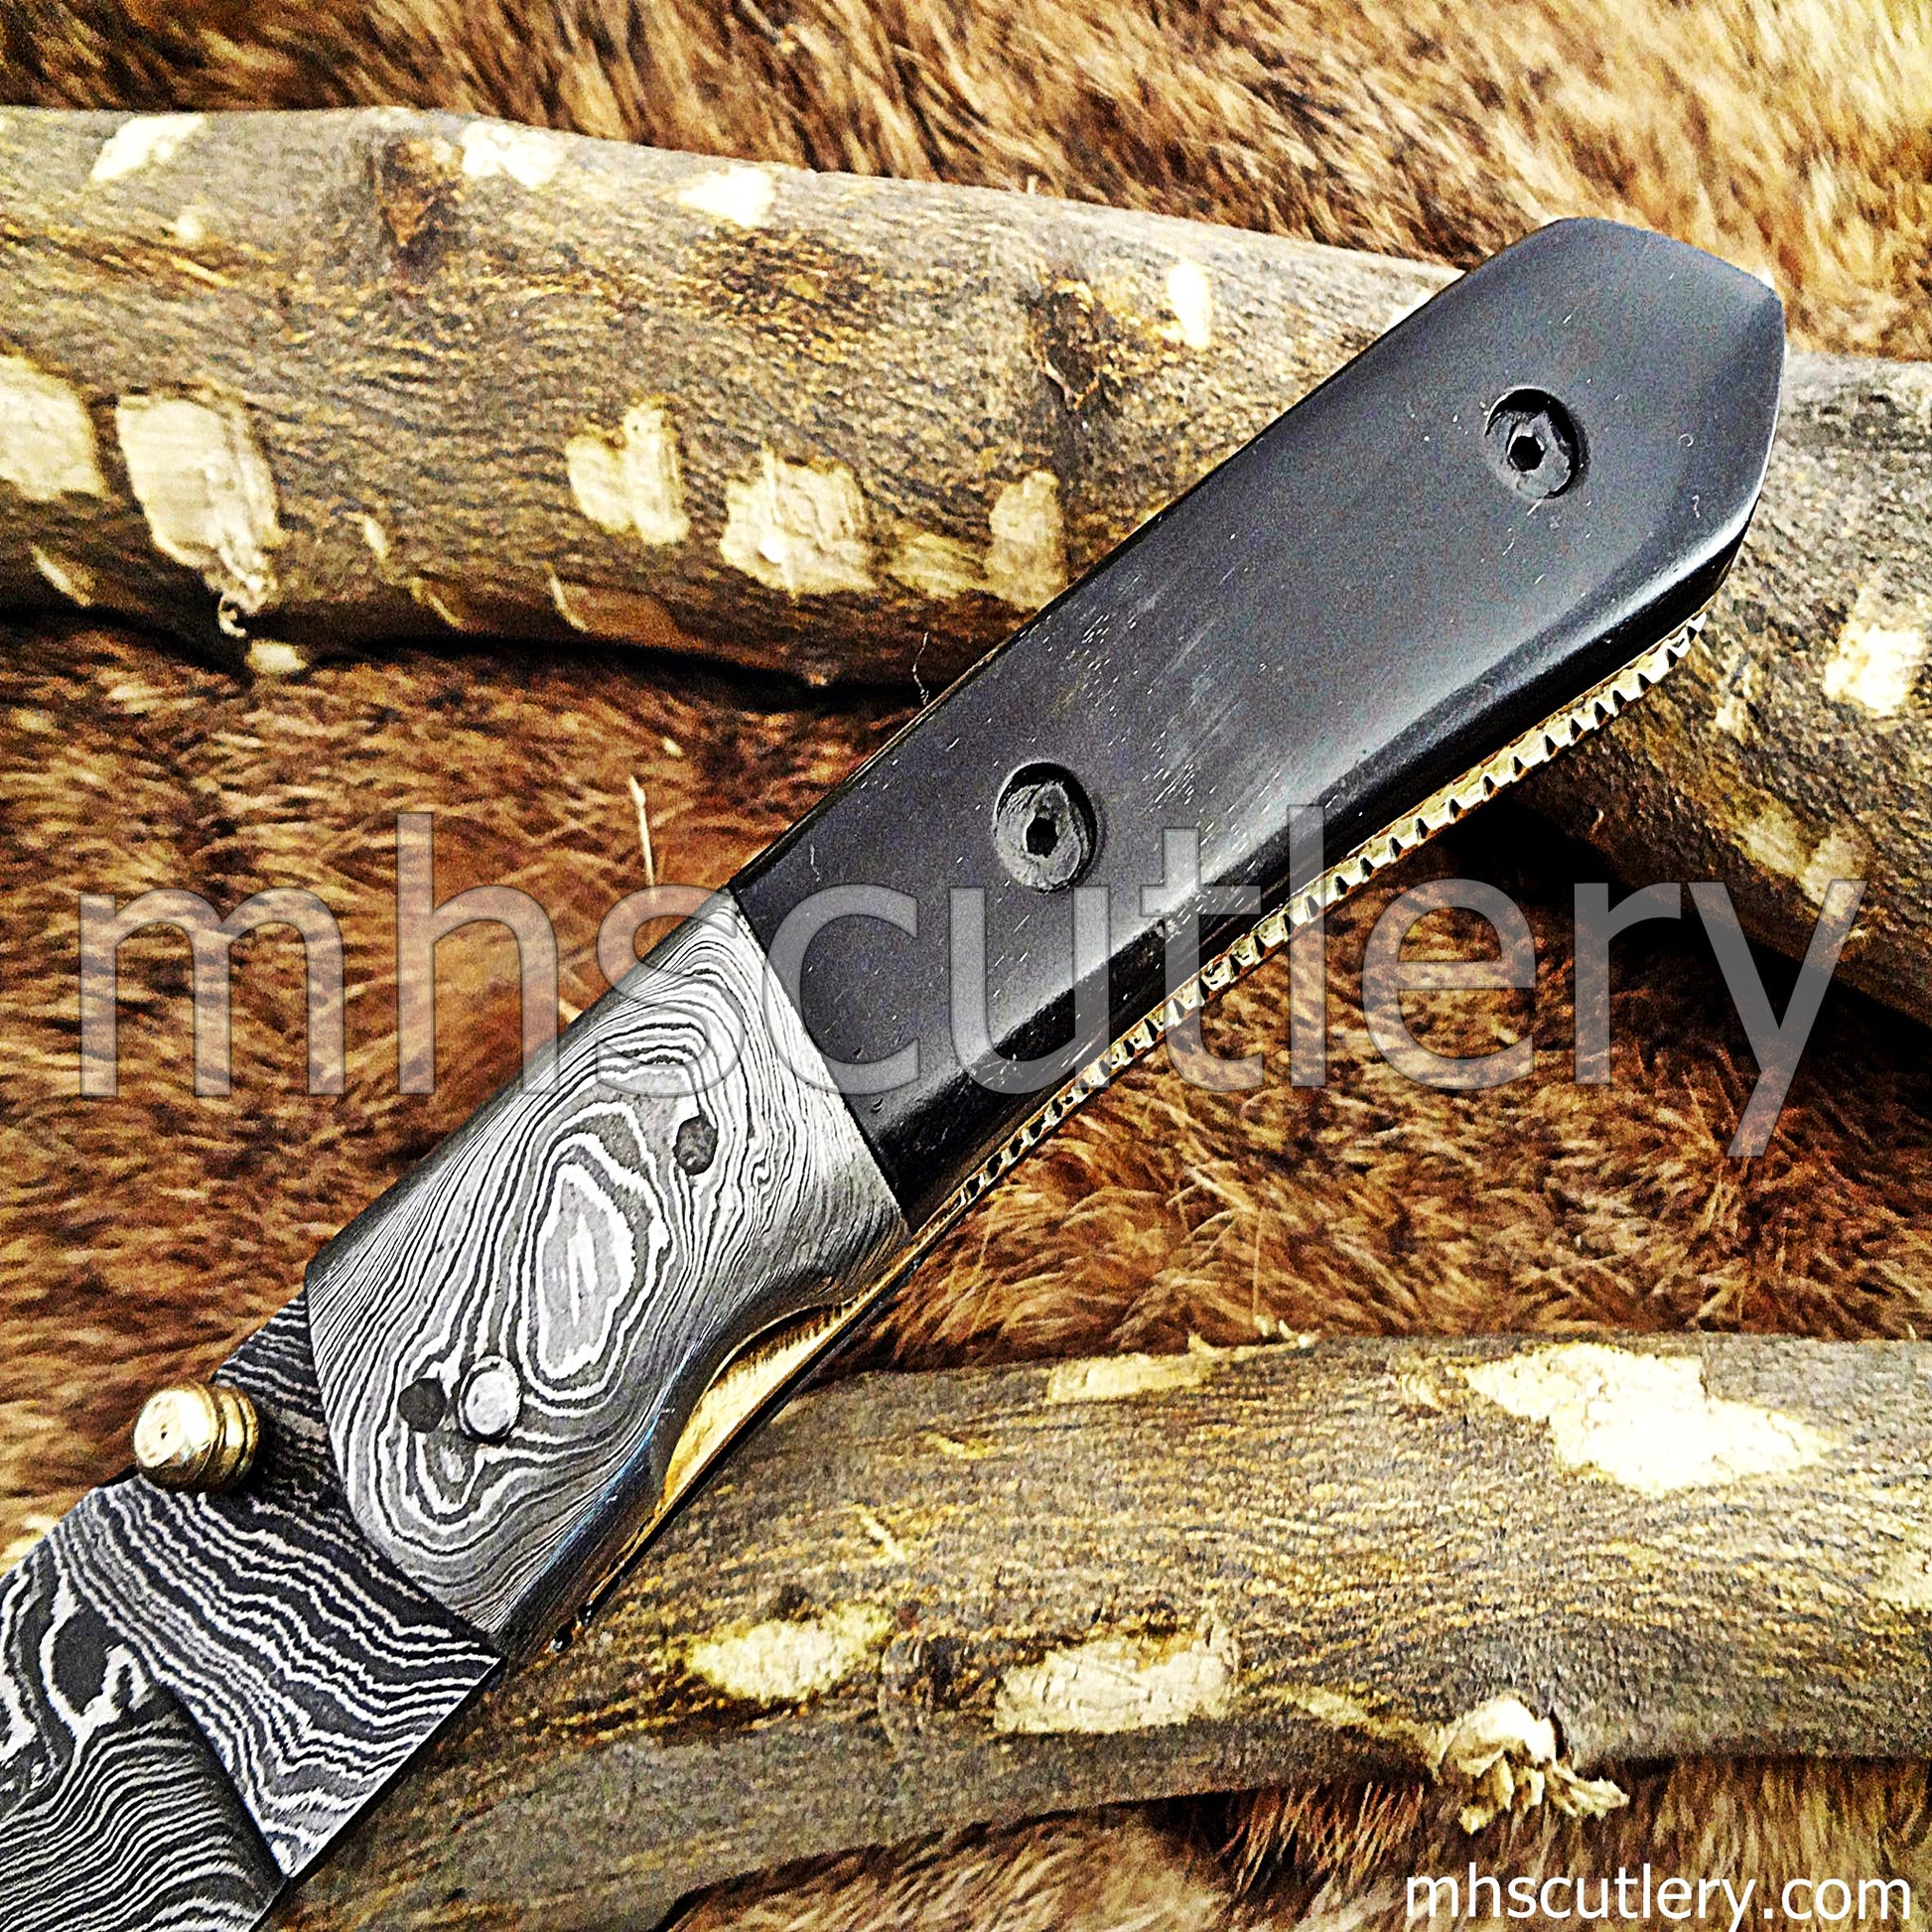 Damascus Steel Tactical Pocket Knife / Bull Horn Handle | mhscutlery